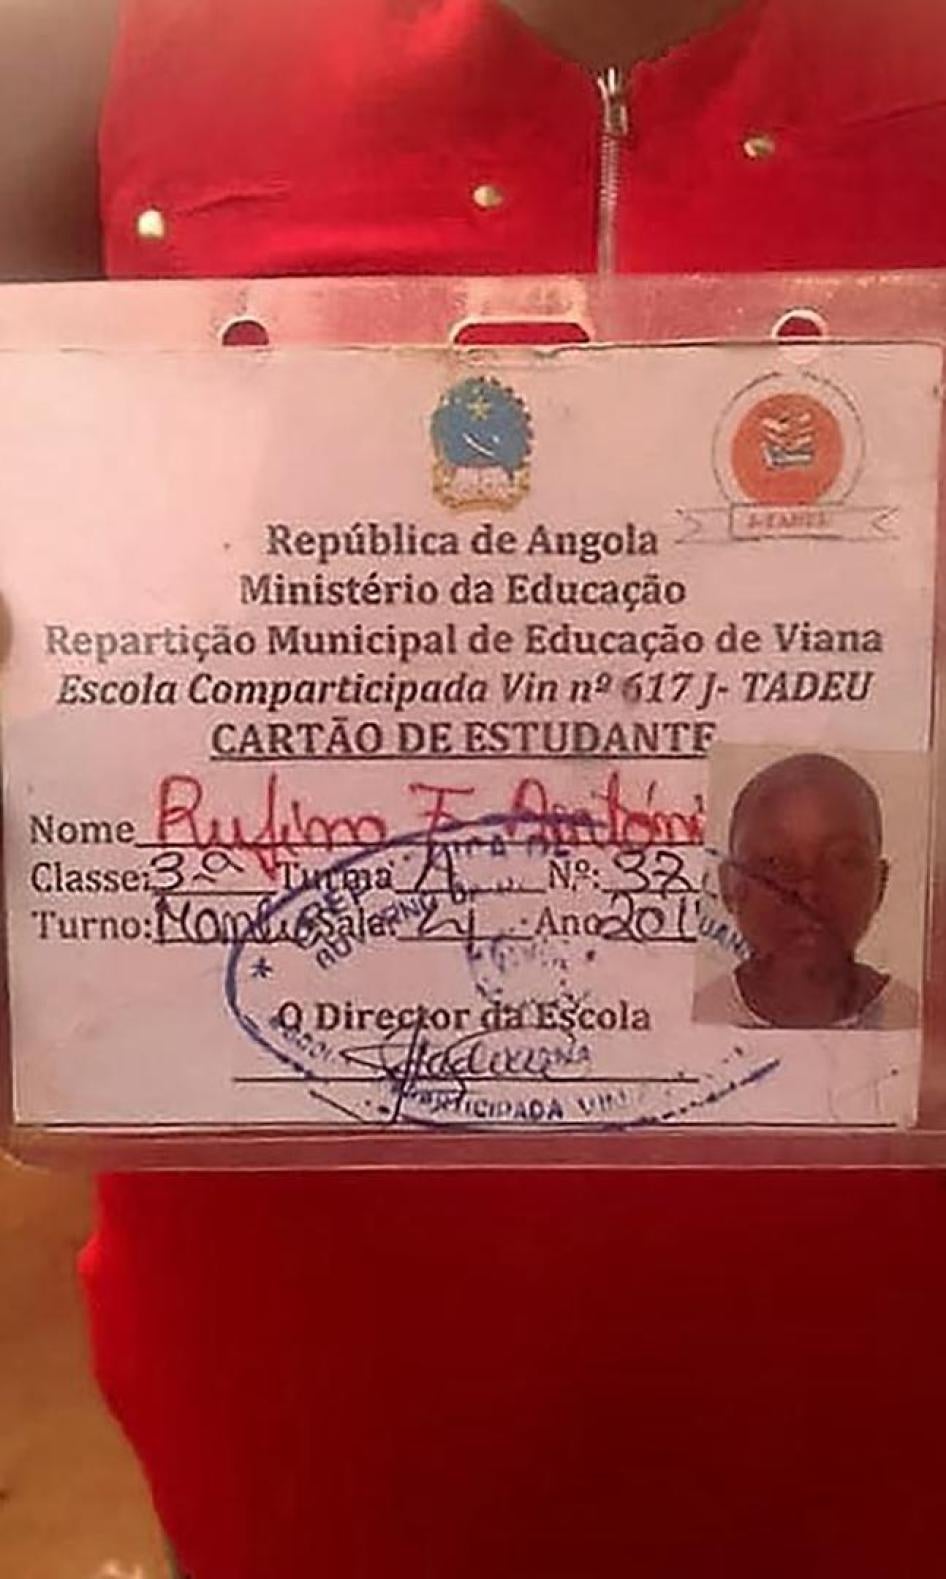 Cartão de estudante de Rufino António, 14 anos, que foi morto a tiro pela polícia militar num protesto pacífico contra as demolições de casas em 6 de agosto de 2016, no Zango II, em Luanda, Angola.